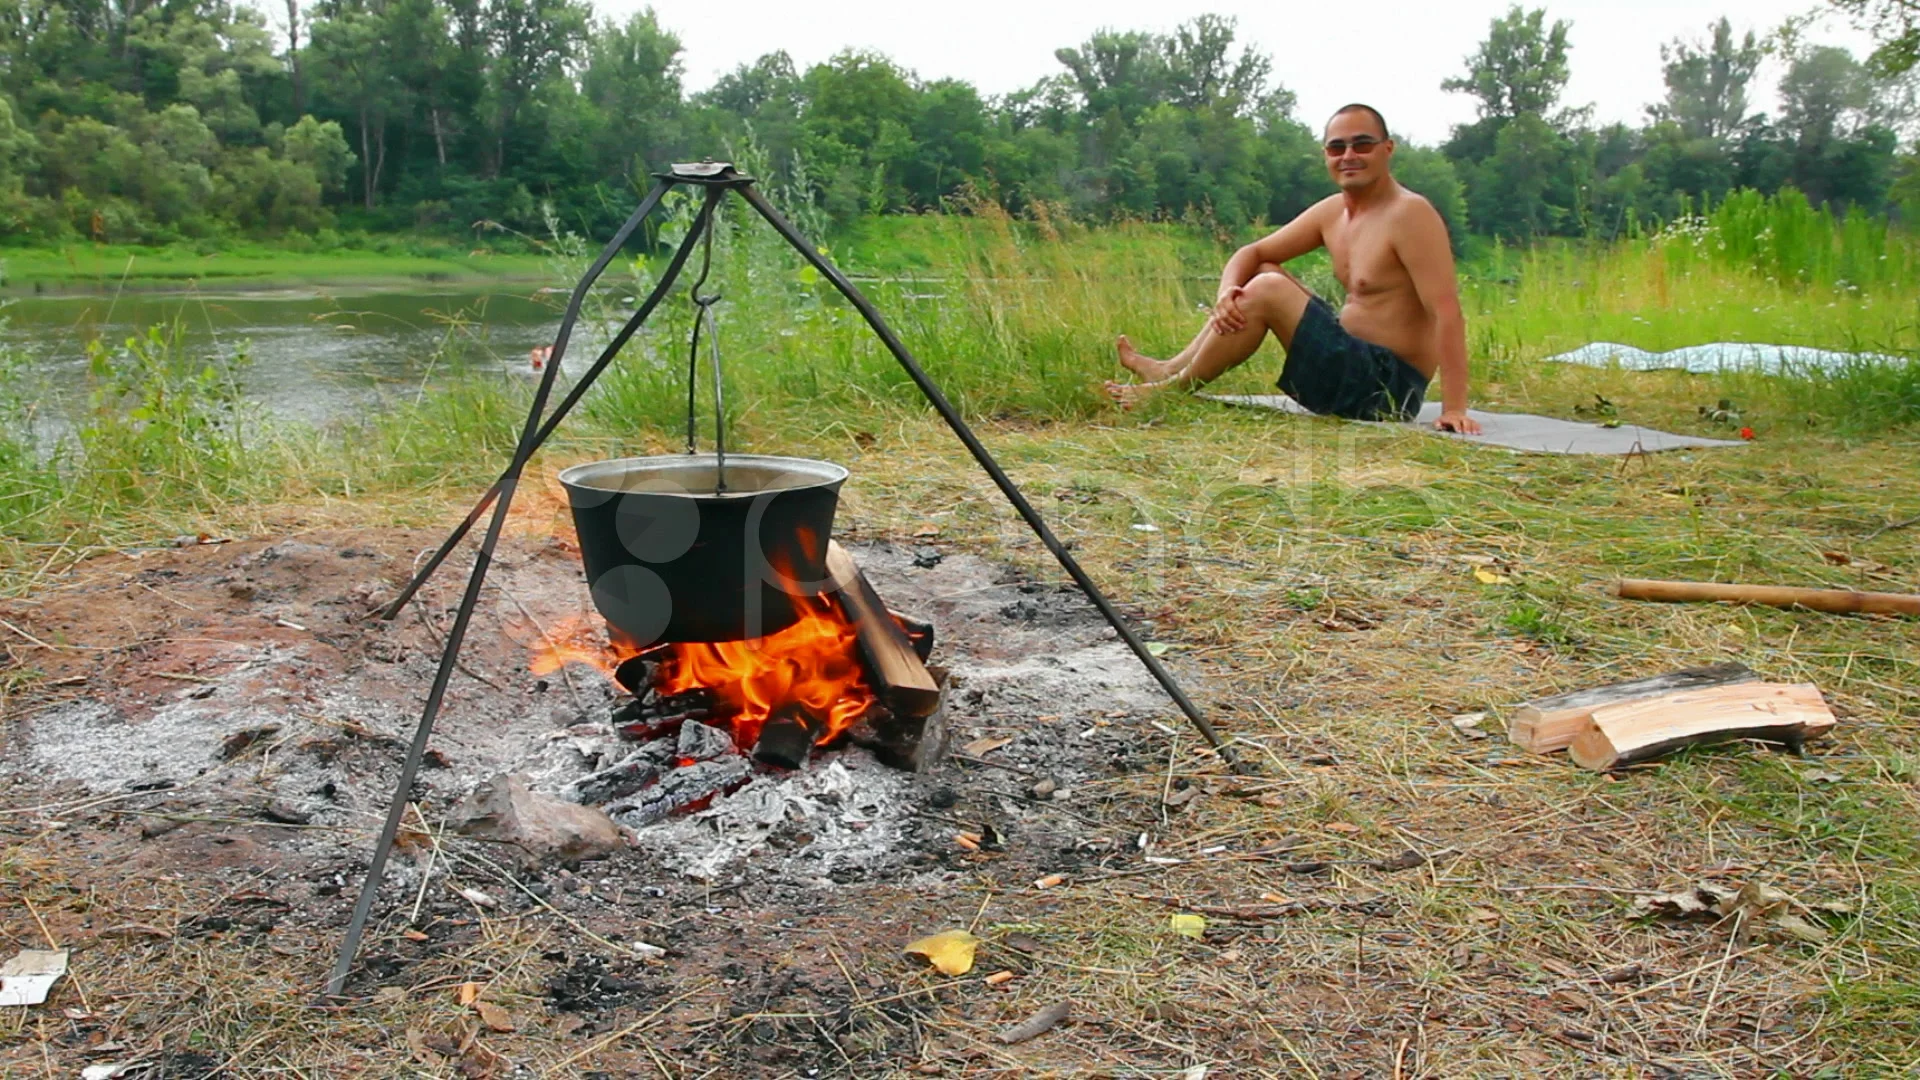 https://images.pond5.com/camping-kettle-over-campfire-footage-008651552_prevstill.jpeg